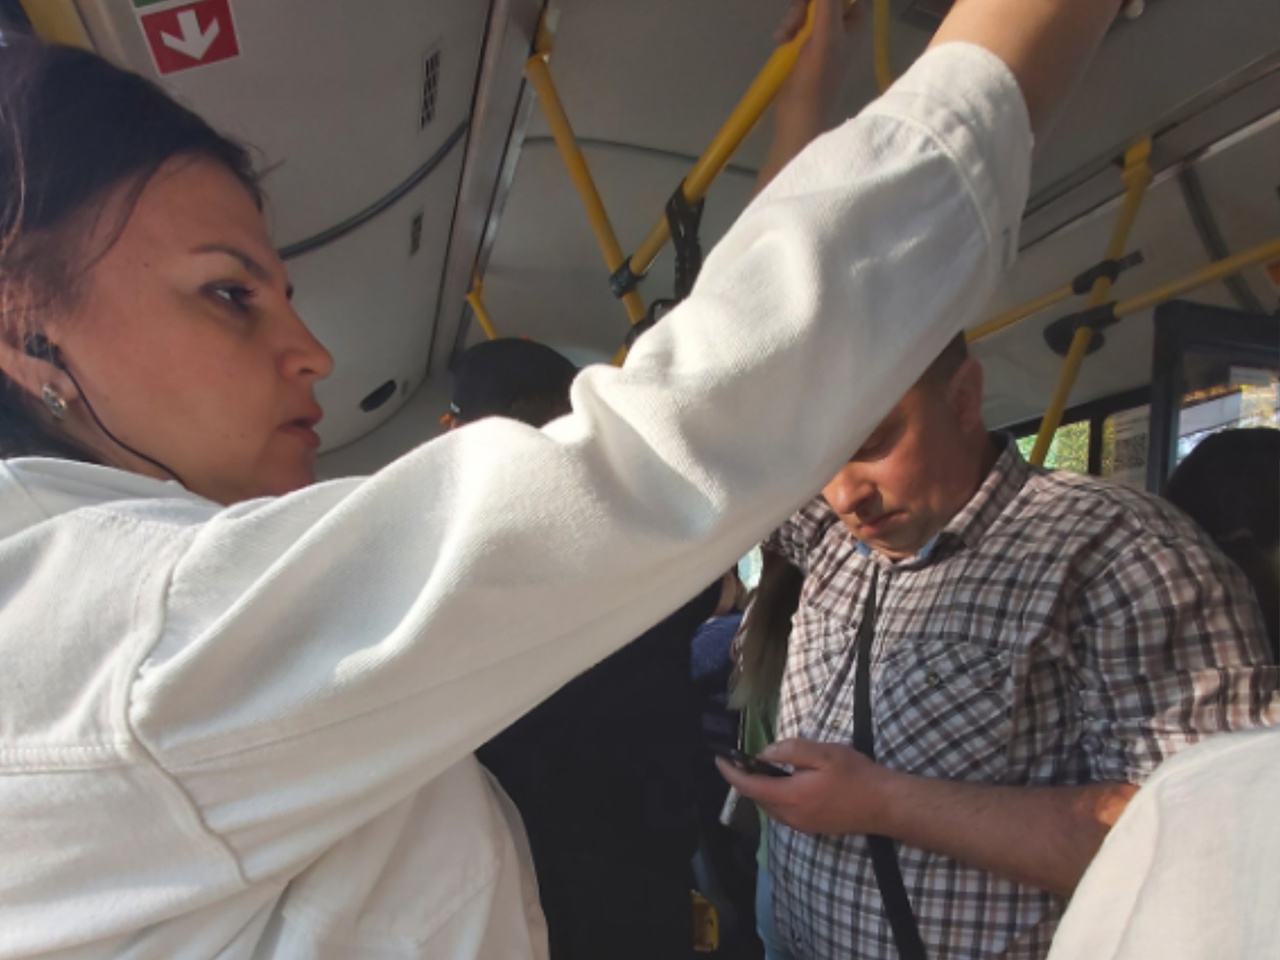 "Ходят редко": ярославцы пожаловались на давку в автобусе